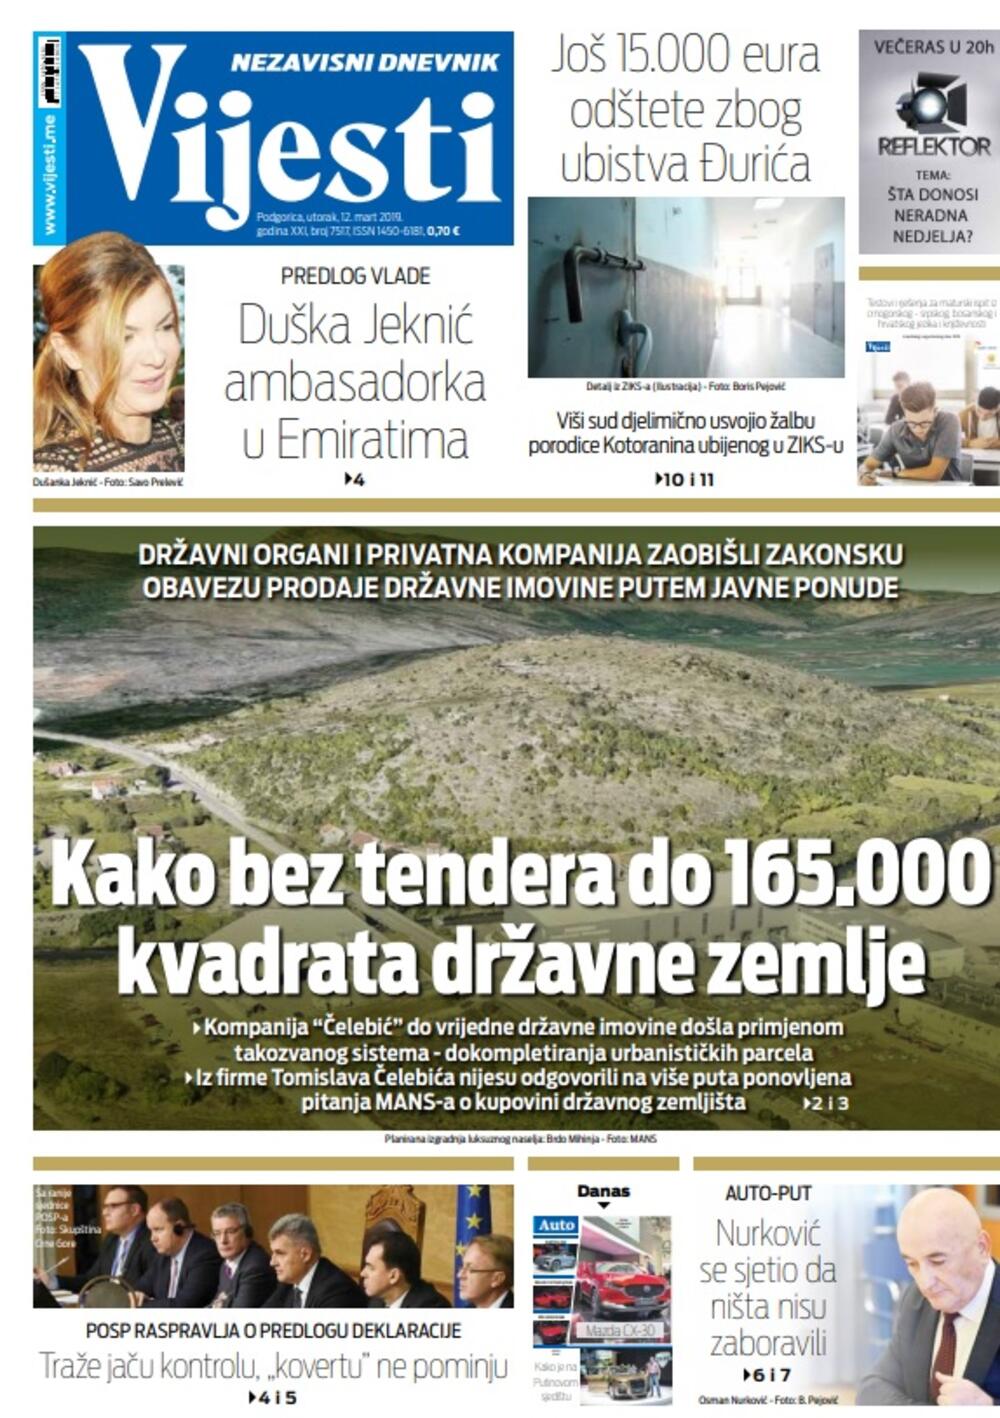 Naslovna strana "Vijesti" 12.3., Foto: Vijesti